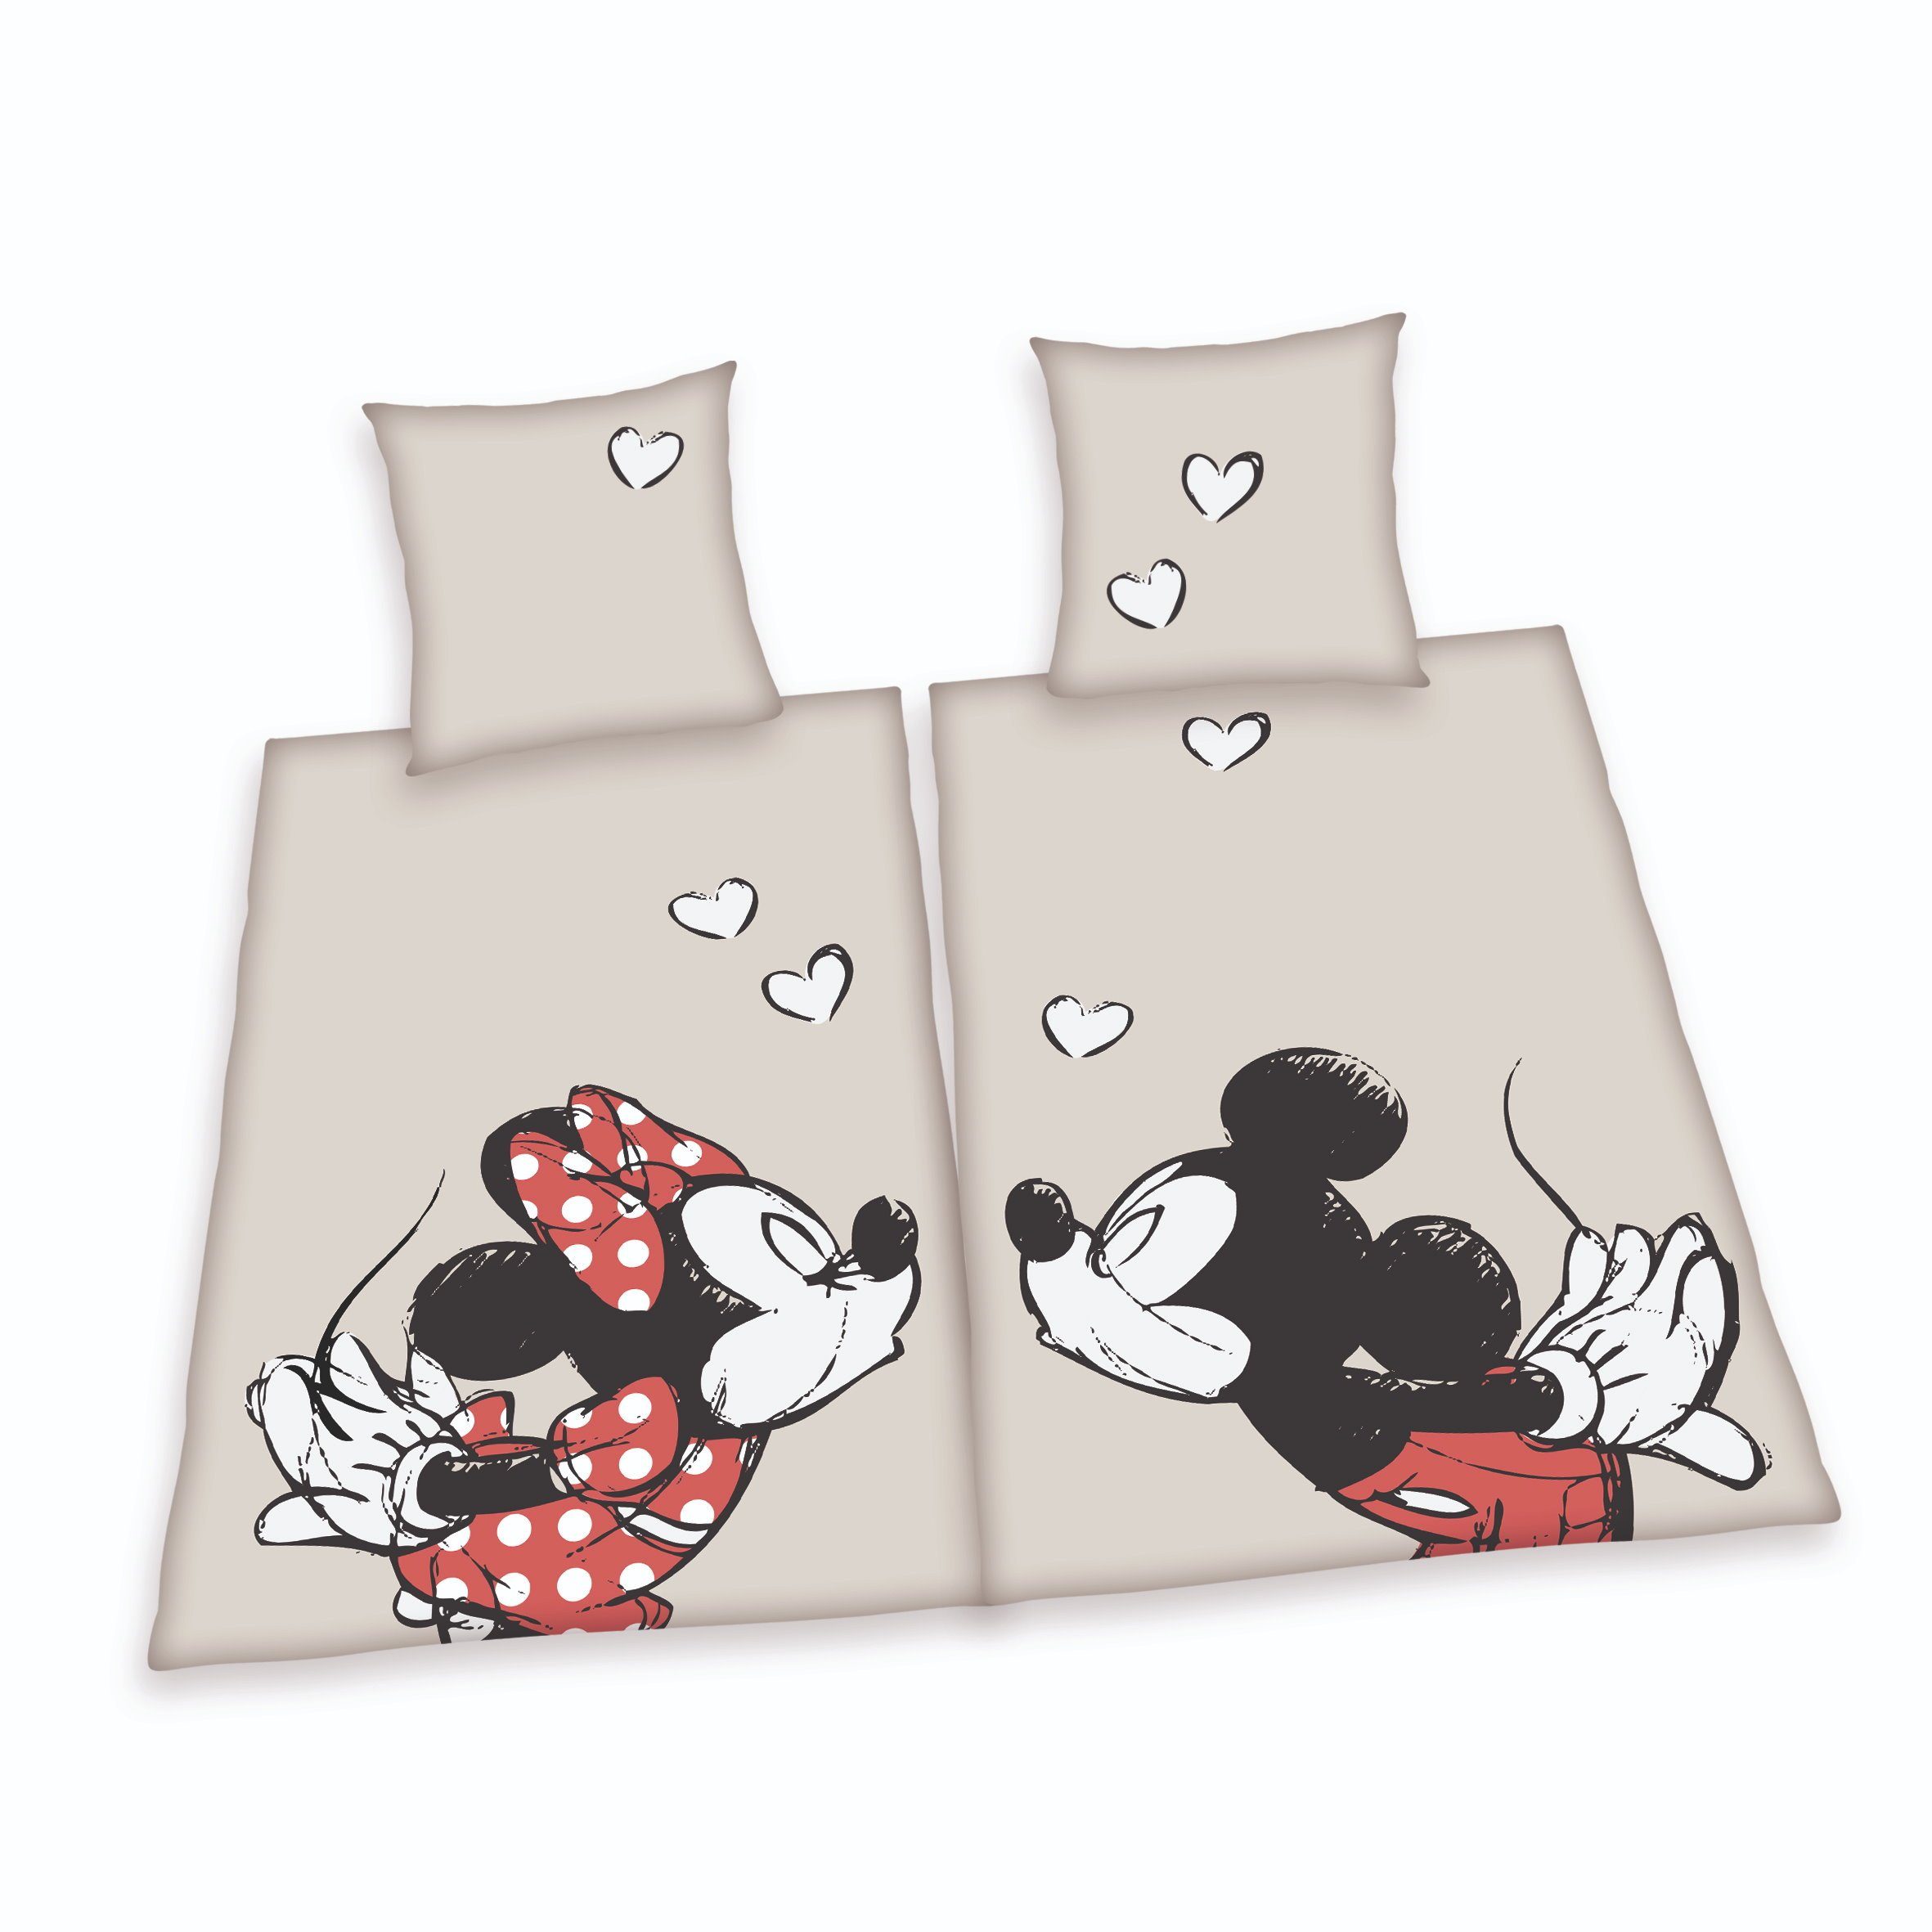 Bettwäsche, Herding, Baumwolle, 4 teilig, Disney Mickey & Minnie Mouse  Partnerbettwäsche Set